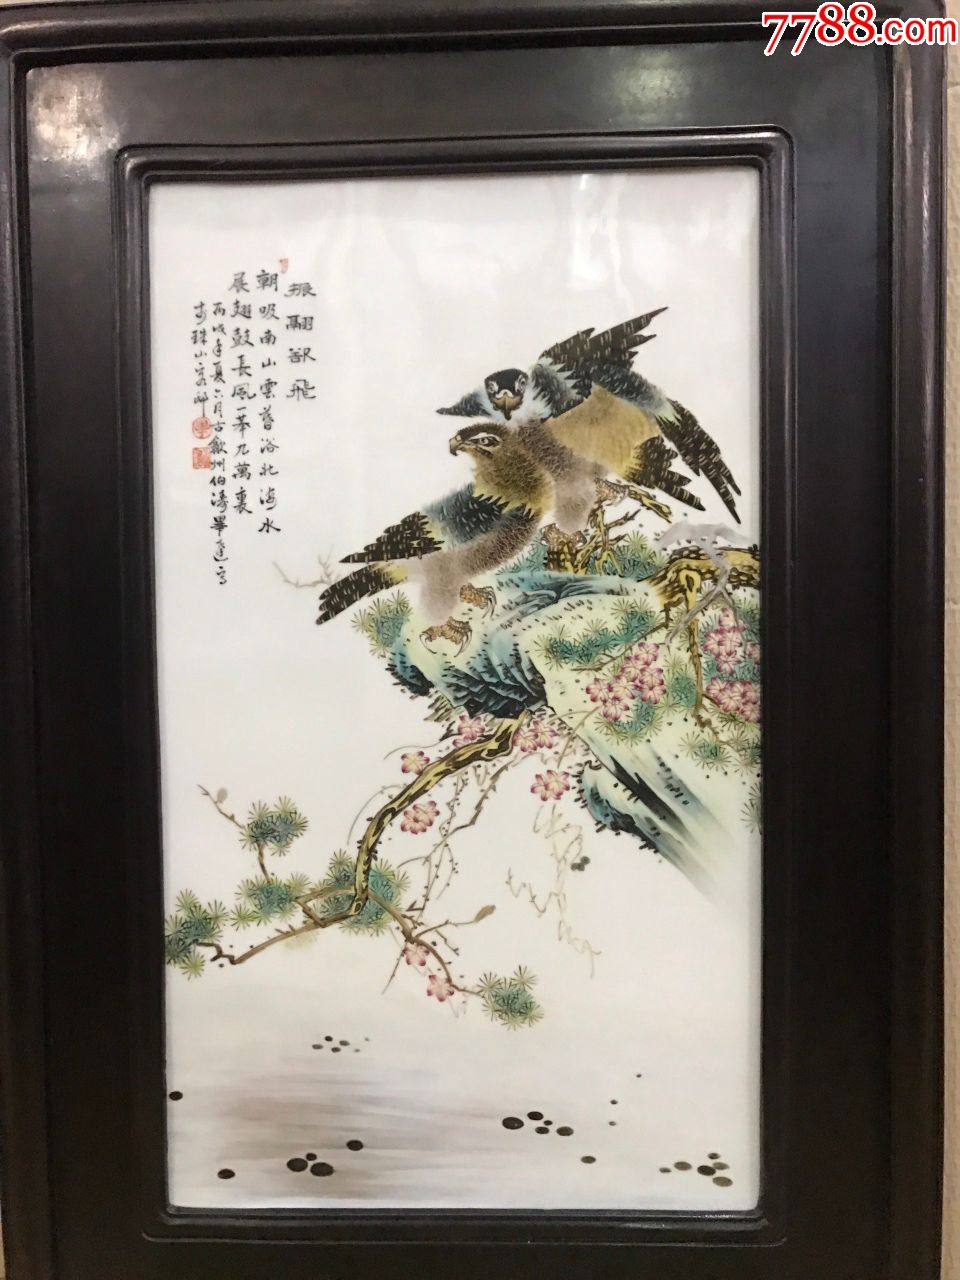 旧藏珠山八友"毕伯涛"瓷板画-镶嵌瓷/瓷板画-7788瓷器